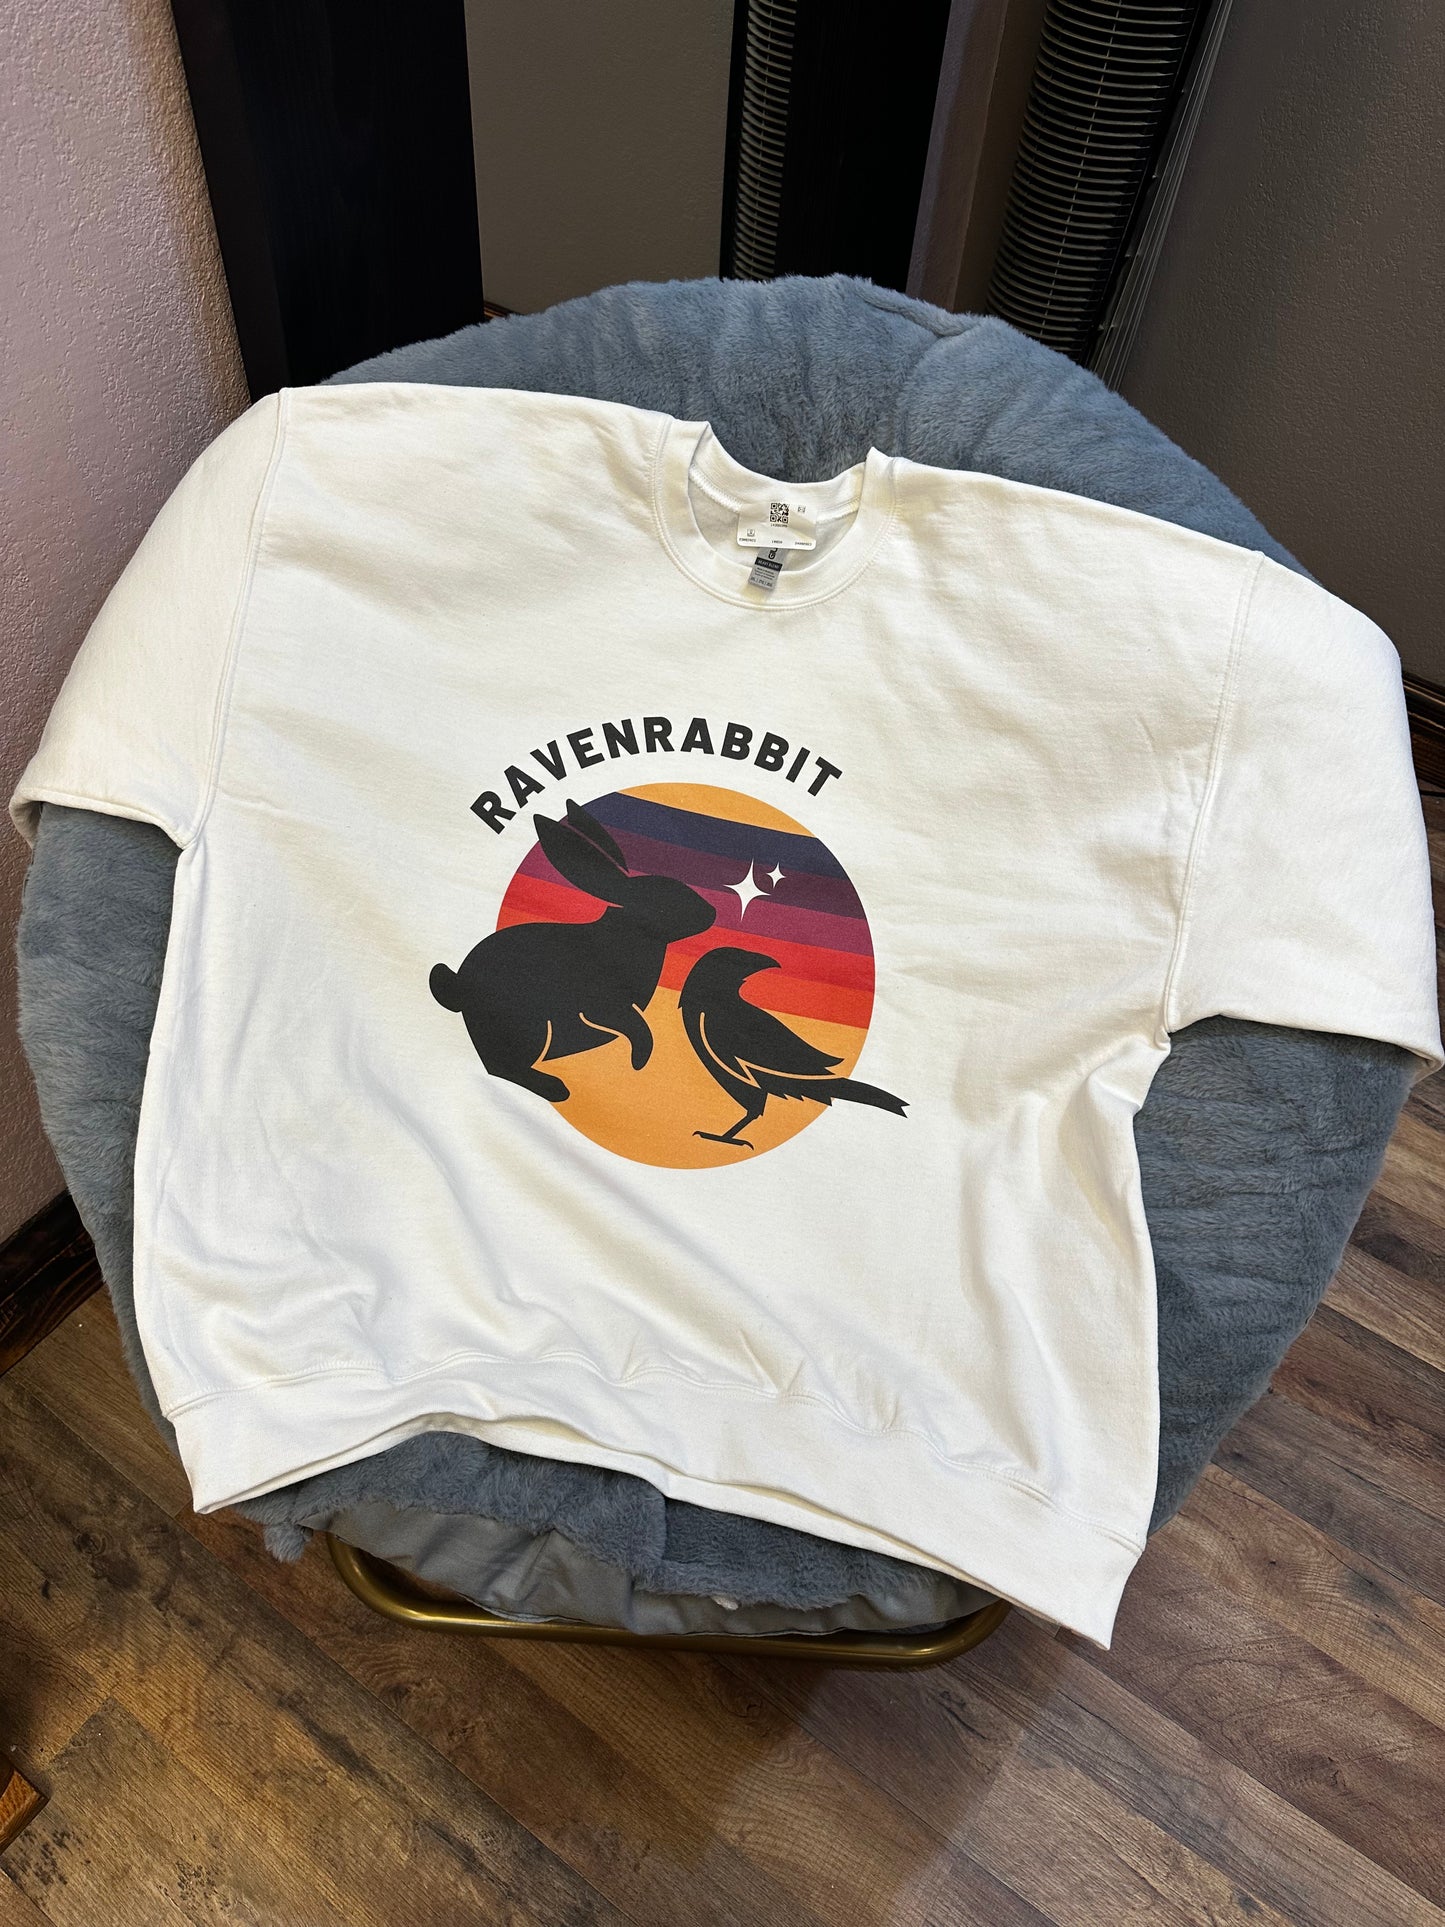 🐰🐦‍⬛  RavenRabbit Unisex Heavy Blend™ Crewneck Sweatshirt